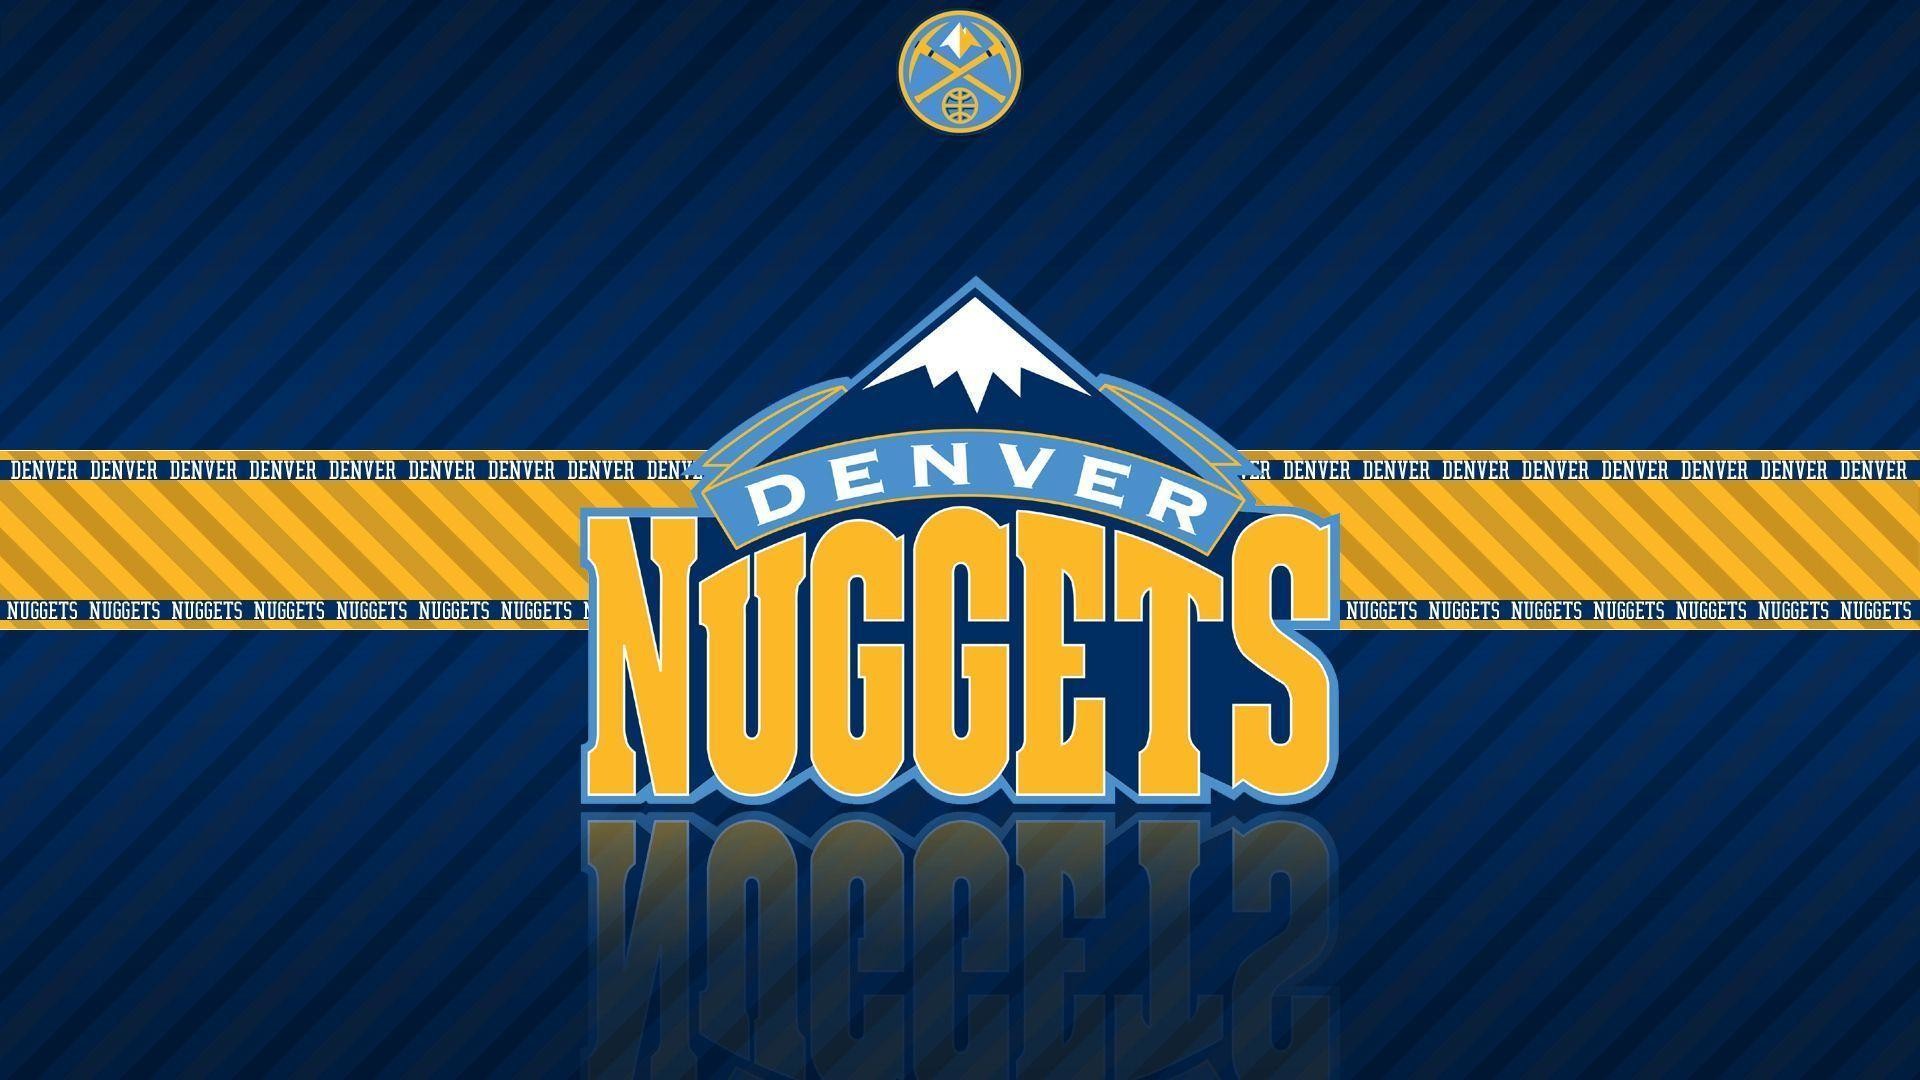 1920x1080 Denver Nuggets NBA wallpapers - HD Wallpaper